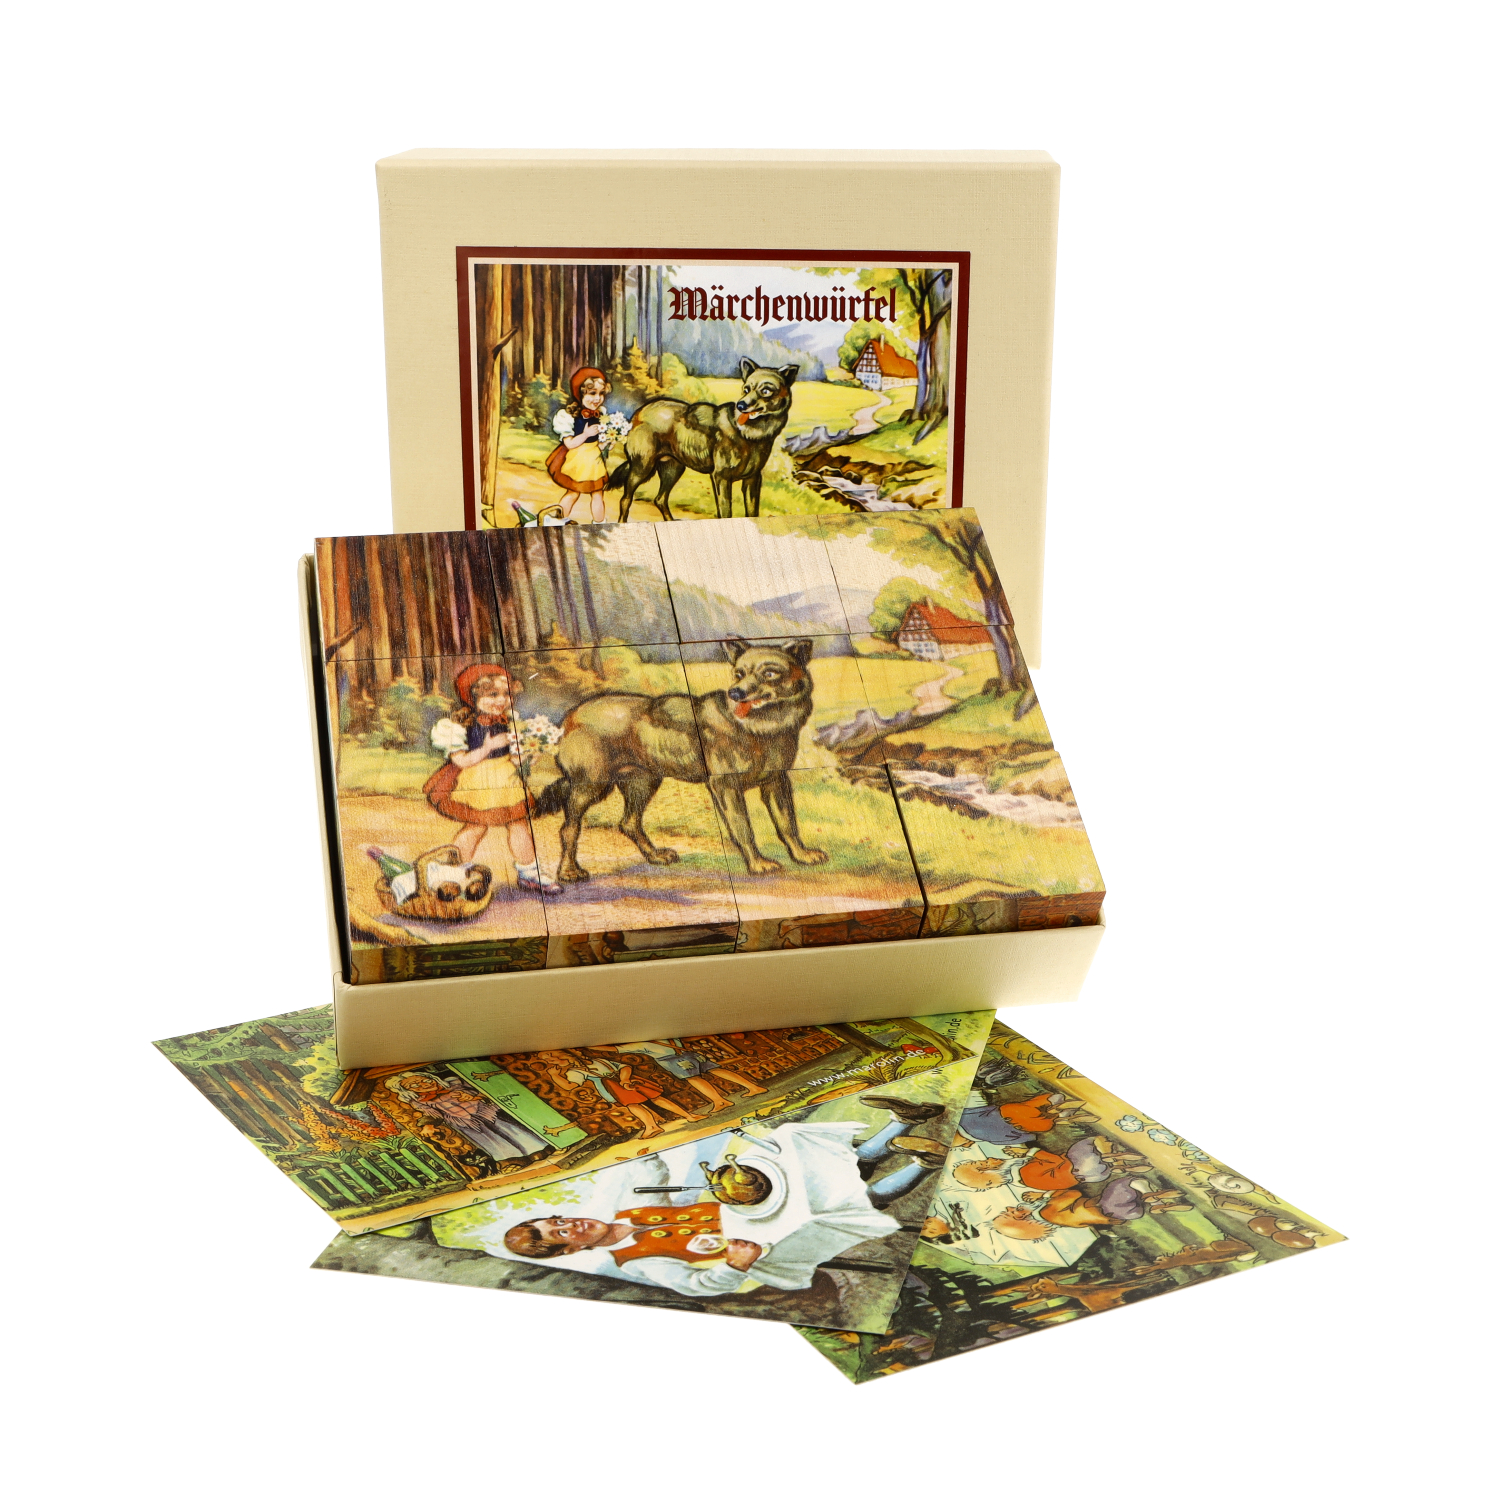 Würfelpuzzle aus Holz mit Märchen - Motiven der Gebrüder Grimm